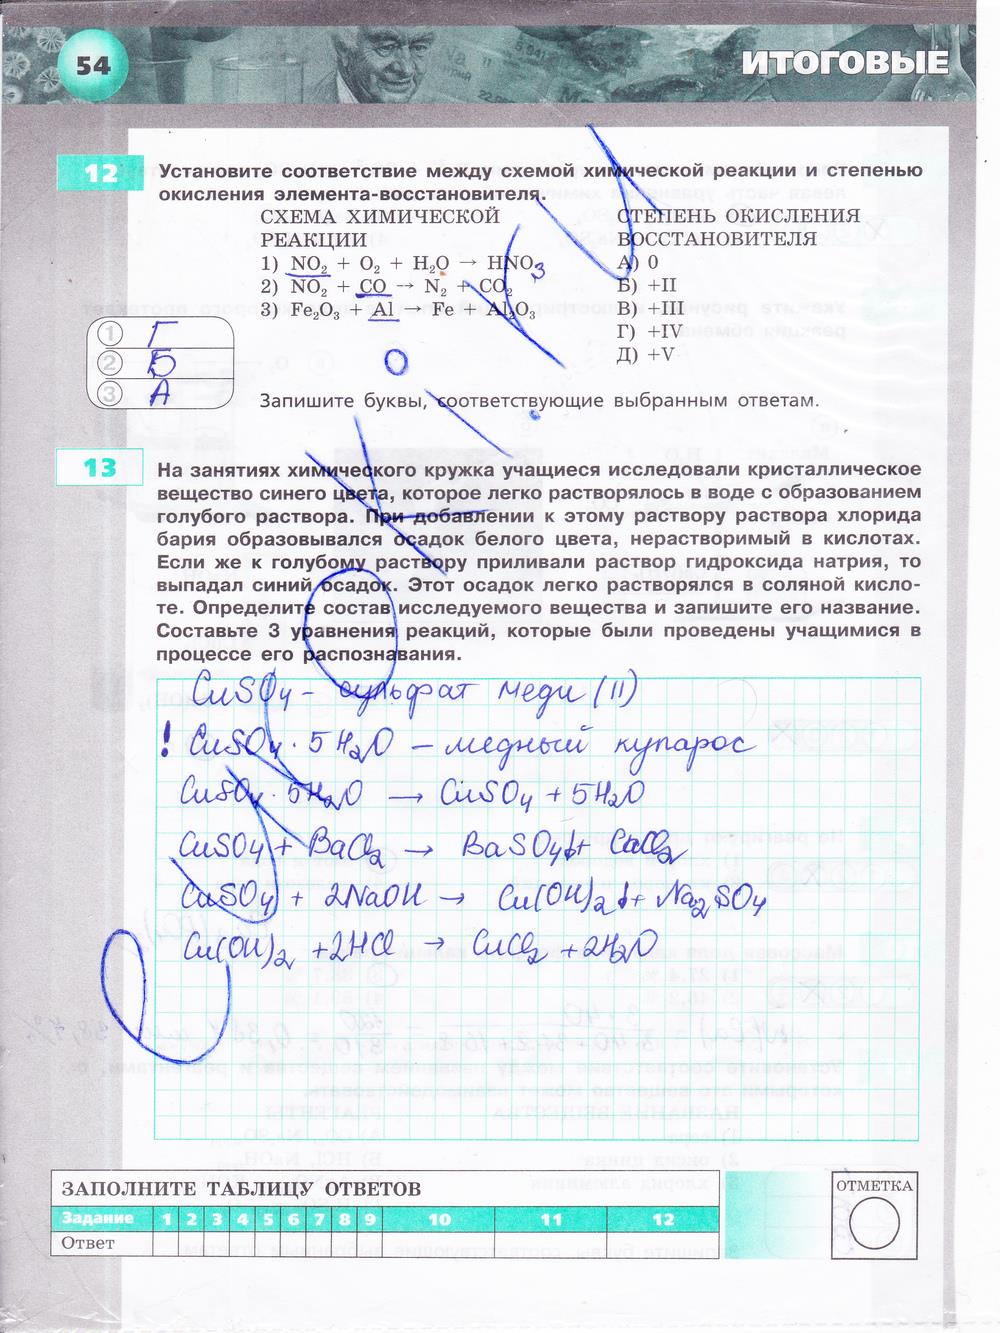 гдз 9 класс тетрадь-экзаменатор страница 54 химия Бобылева, Бирюлина